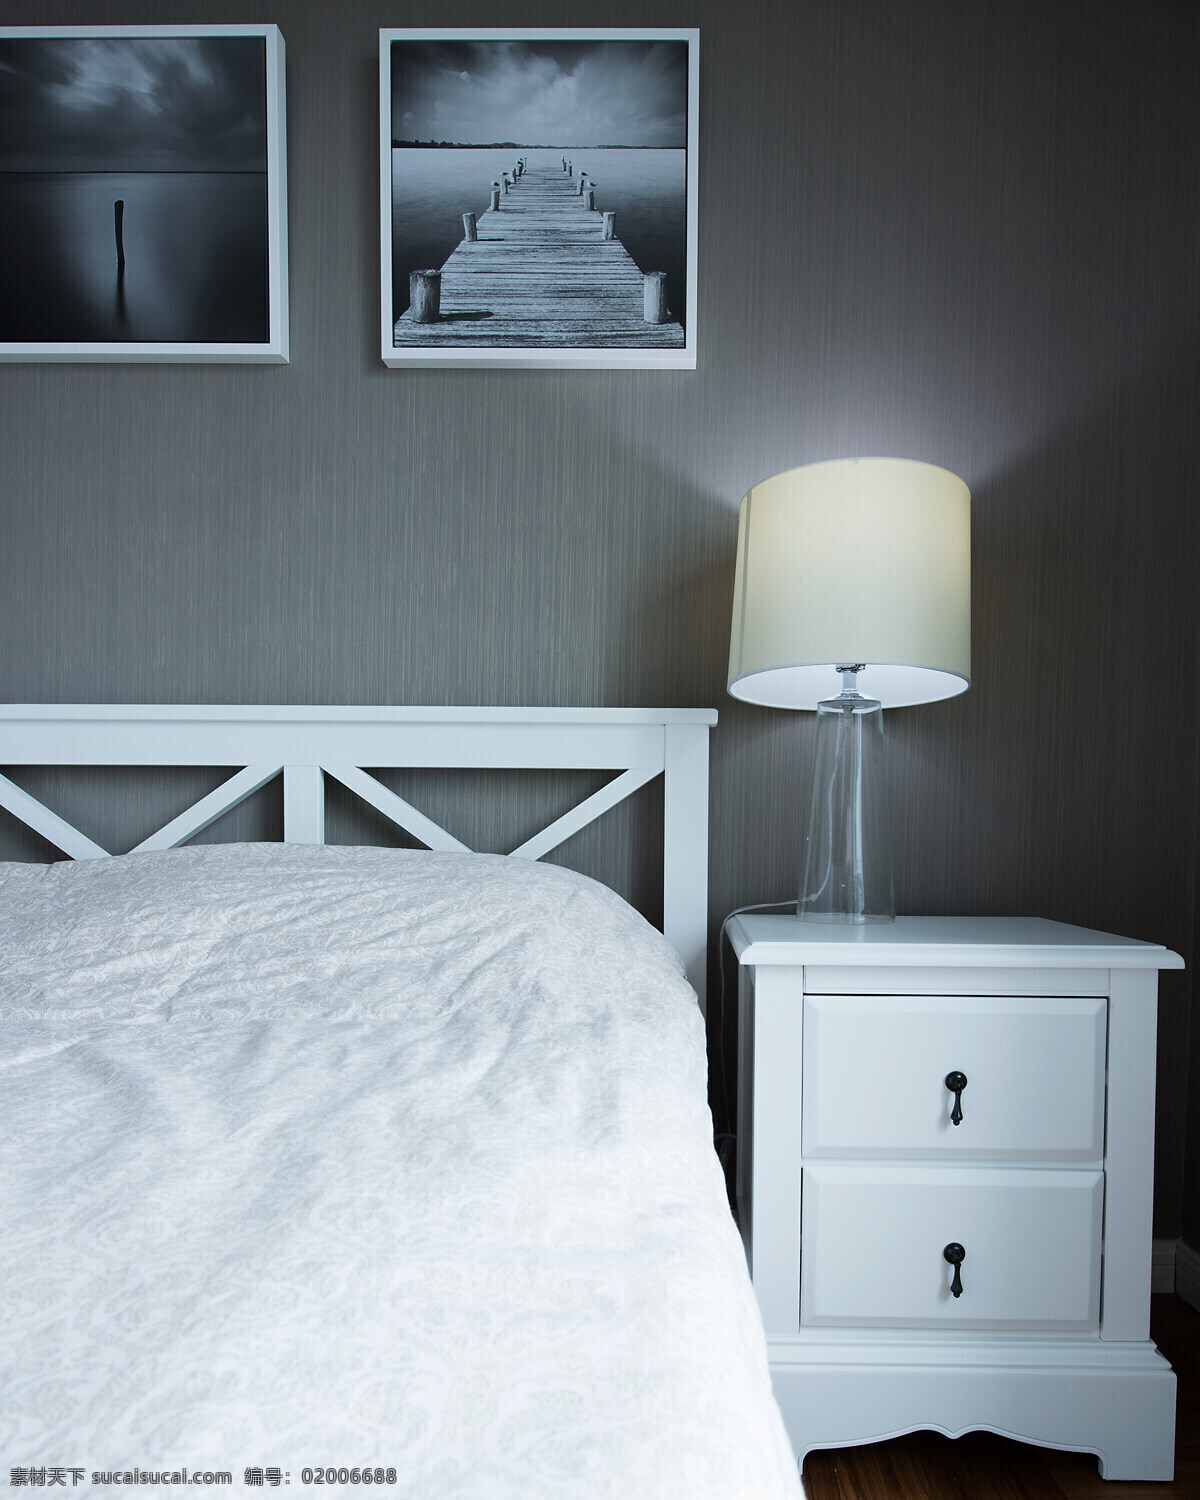 田园 卧室 灰色 背景 墙 室内装修 效果图 卧室装修 白色床品 白色床头柜 台灯